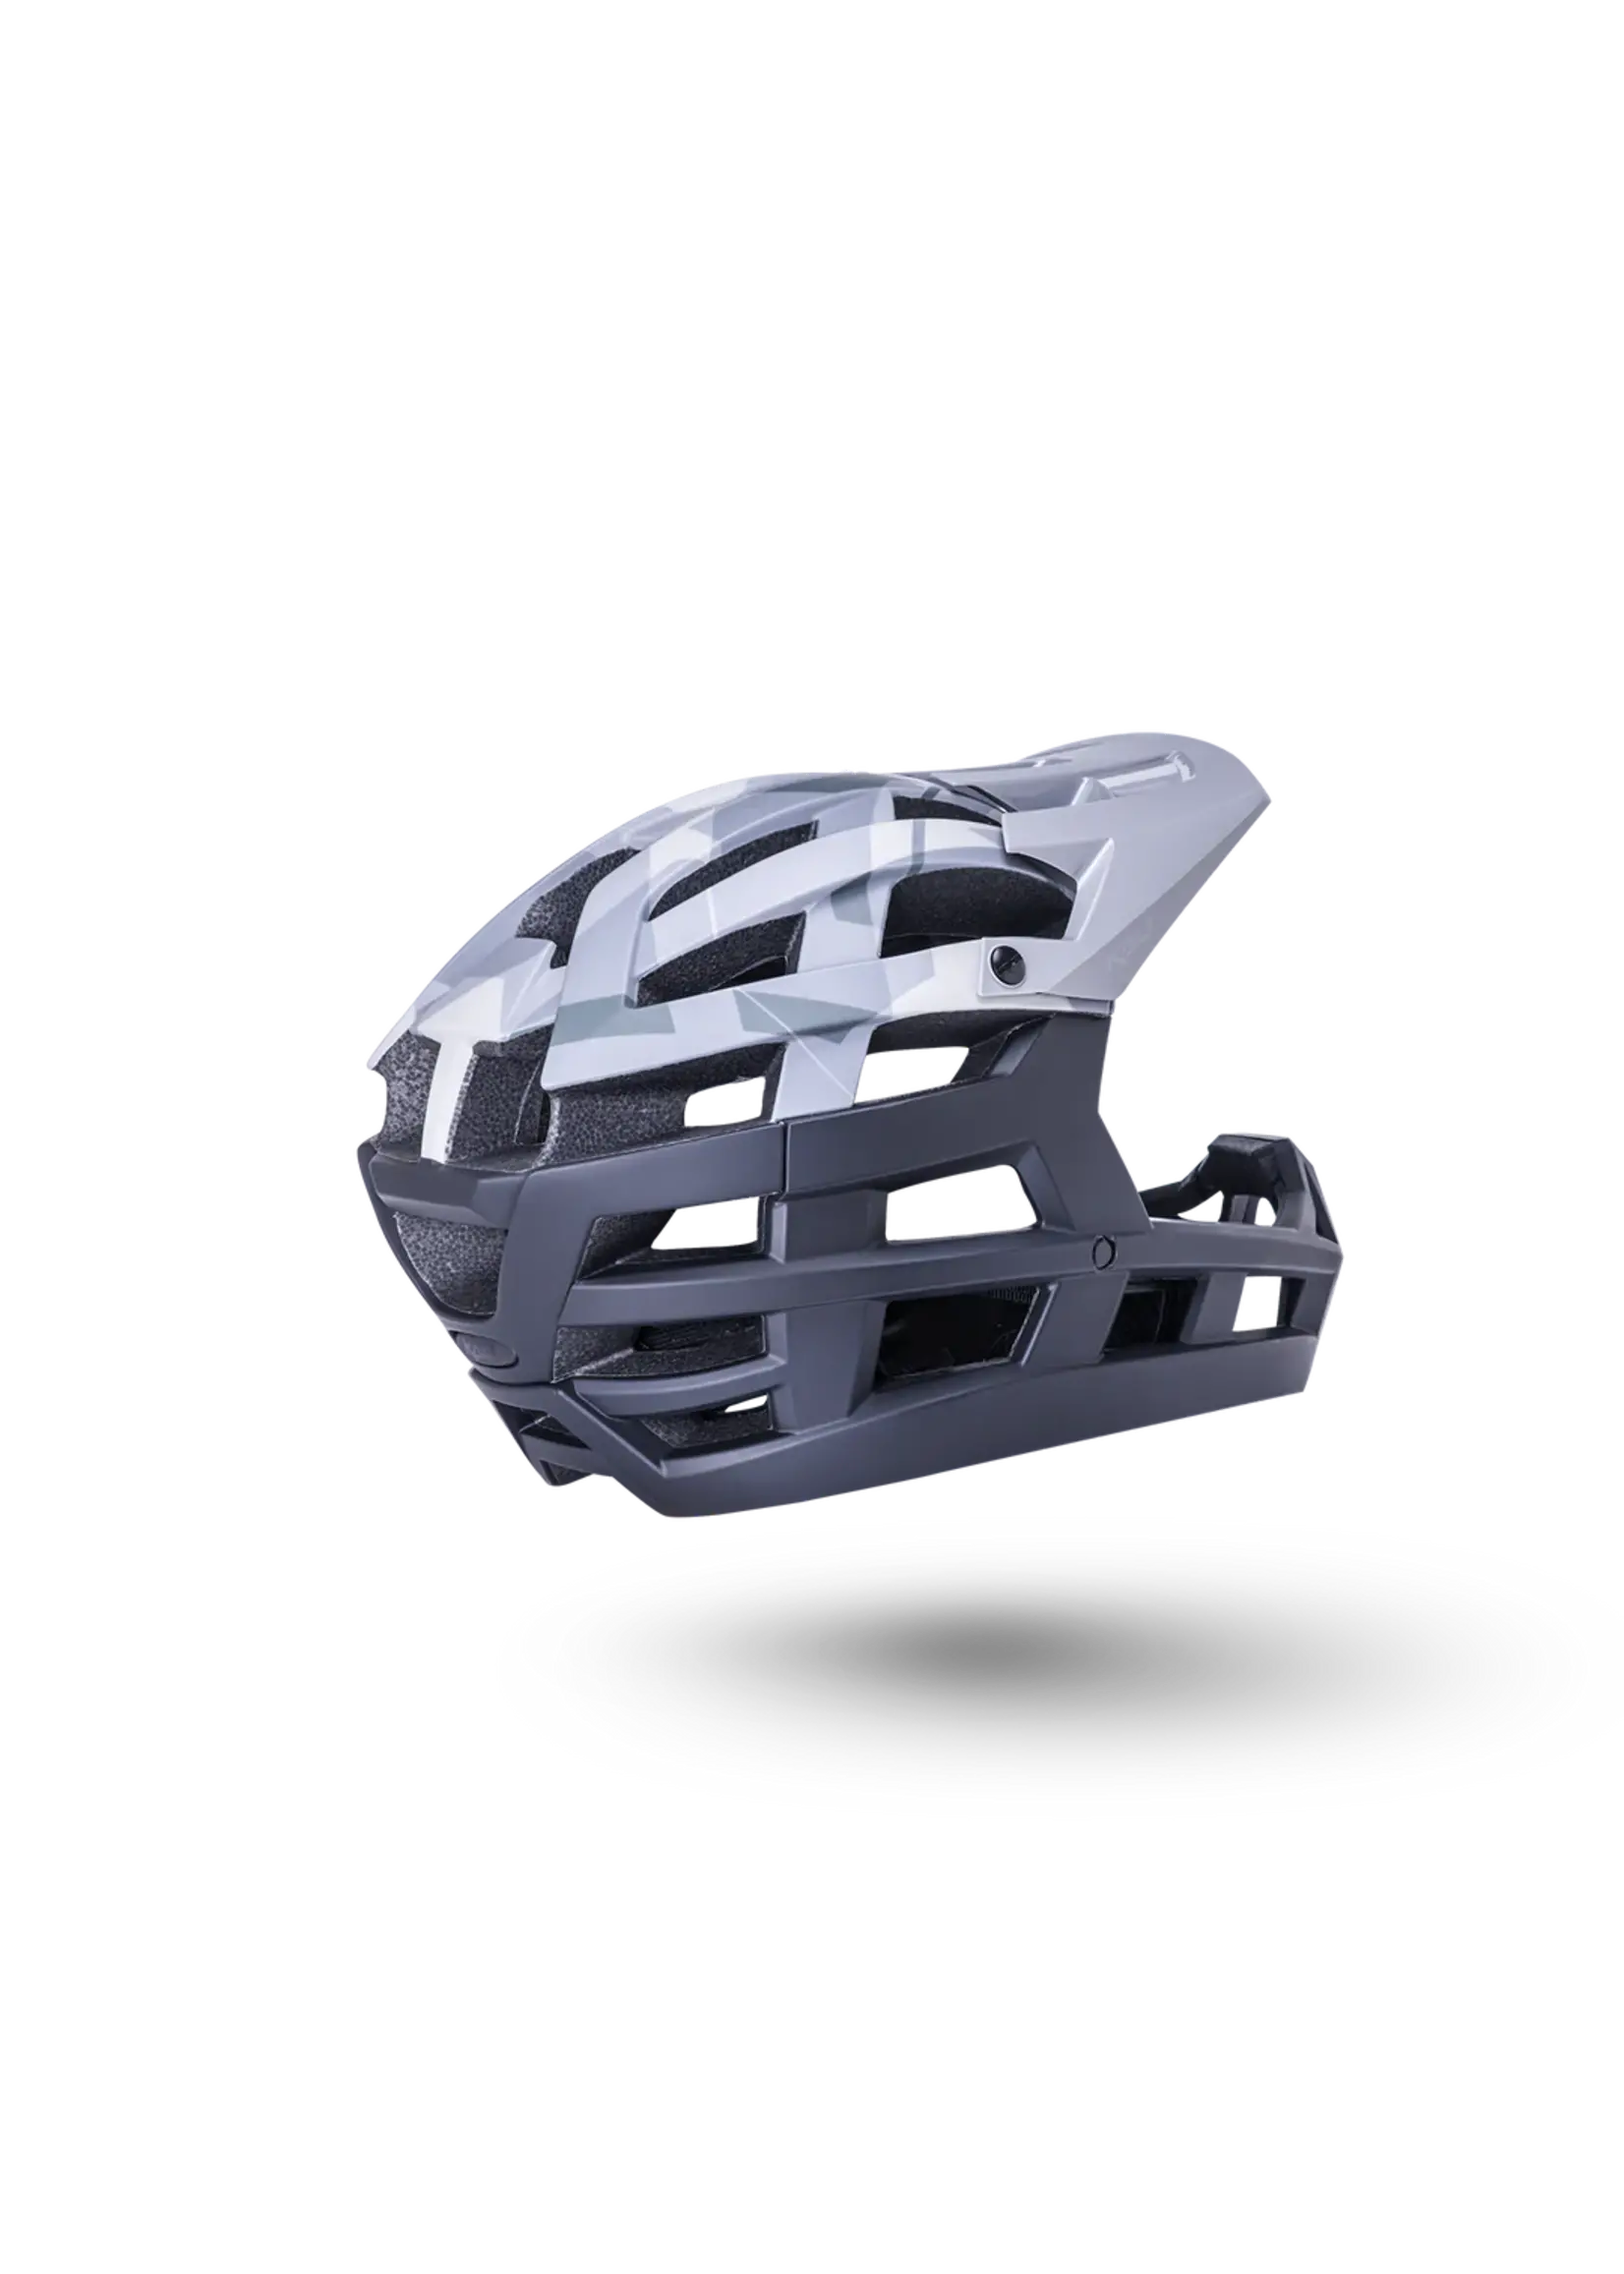 KALI Invader 2.0 Helmet